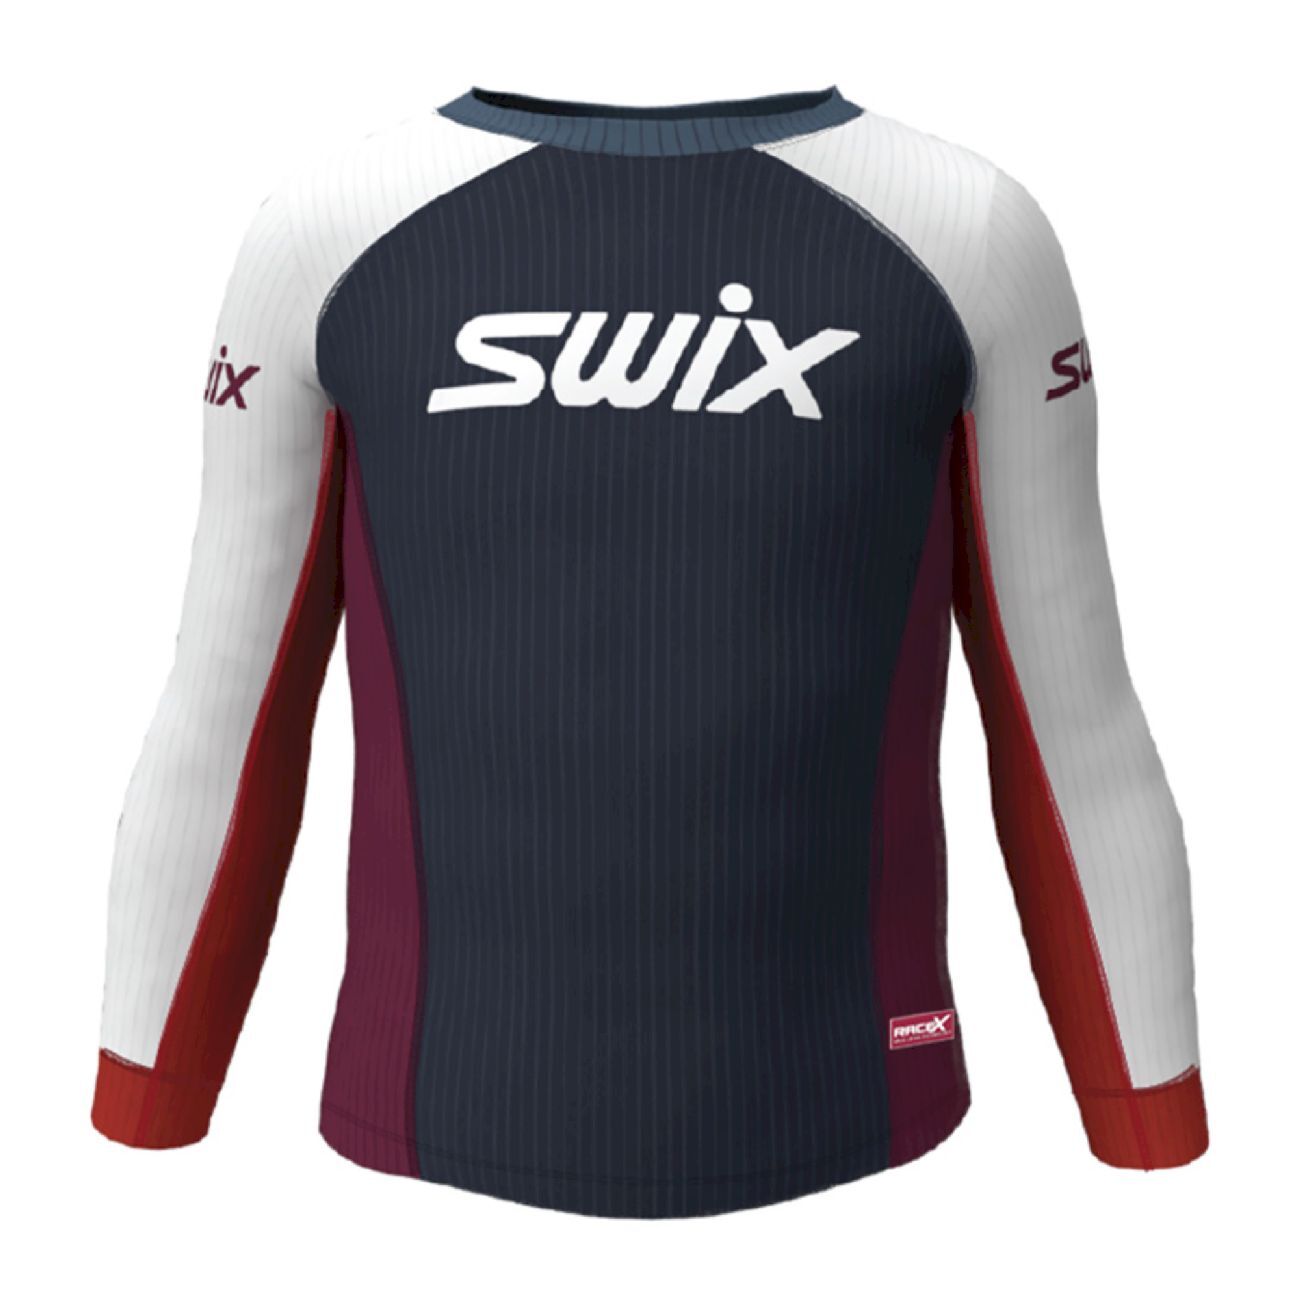 Swix Racex Bodywear Junior - Underställ - Barn